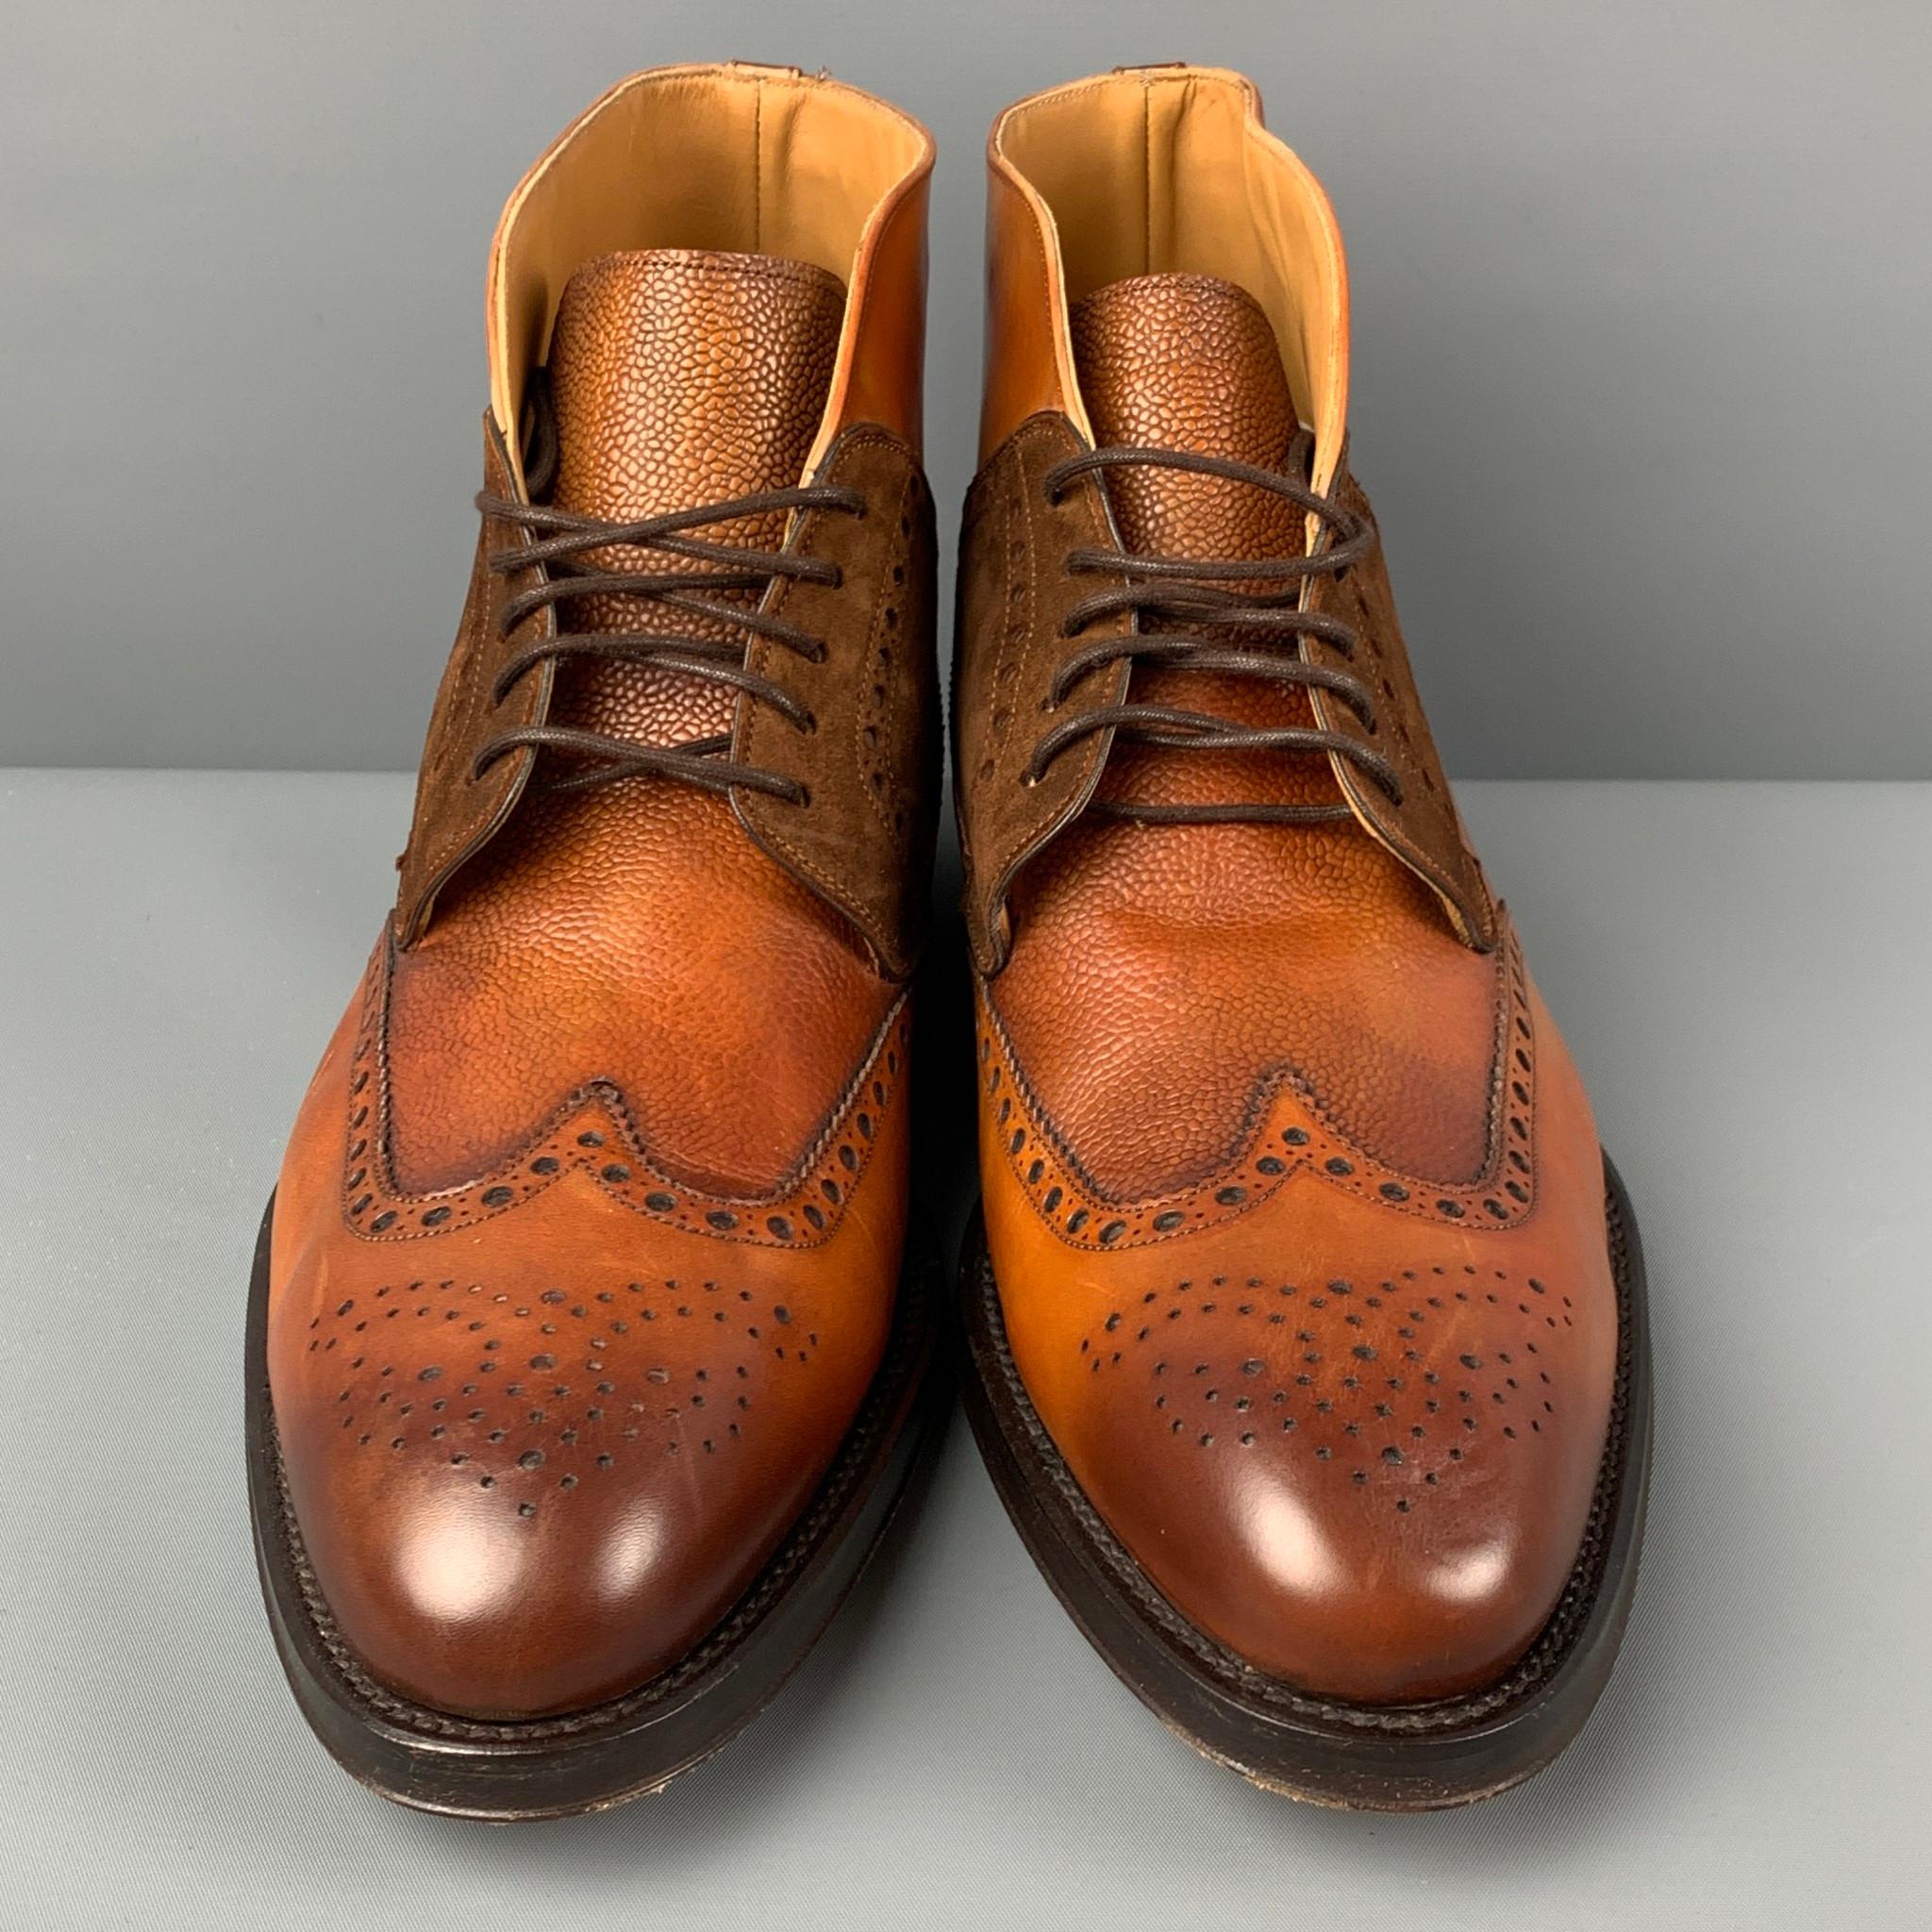 Men's PAUL STUART Size 10.5 Tan Brown Leather Wingtip Boots